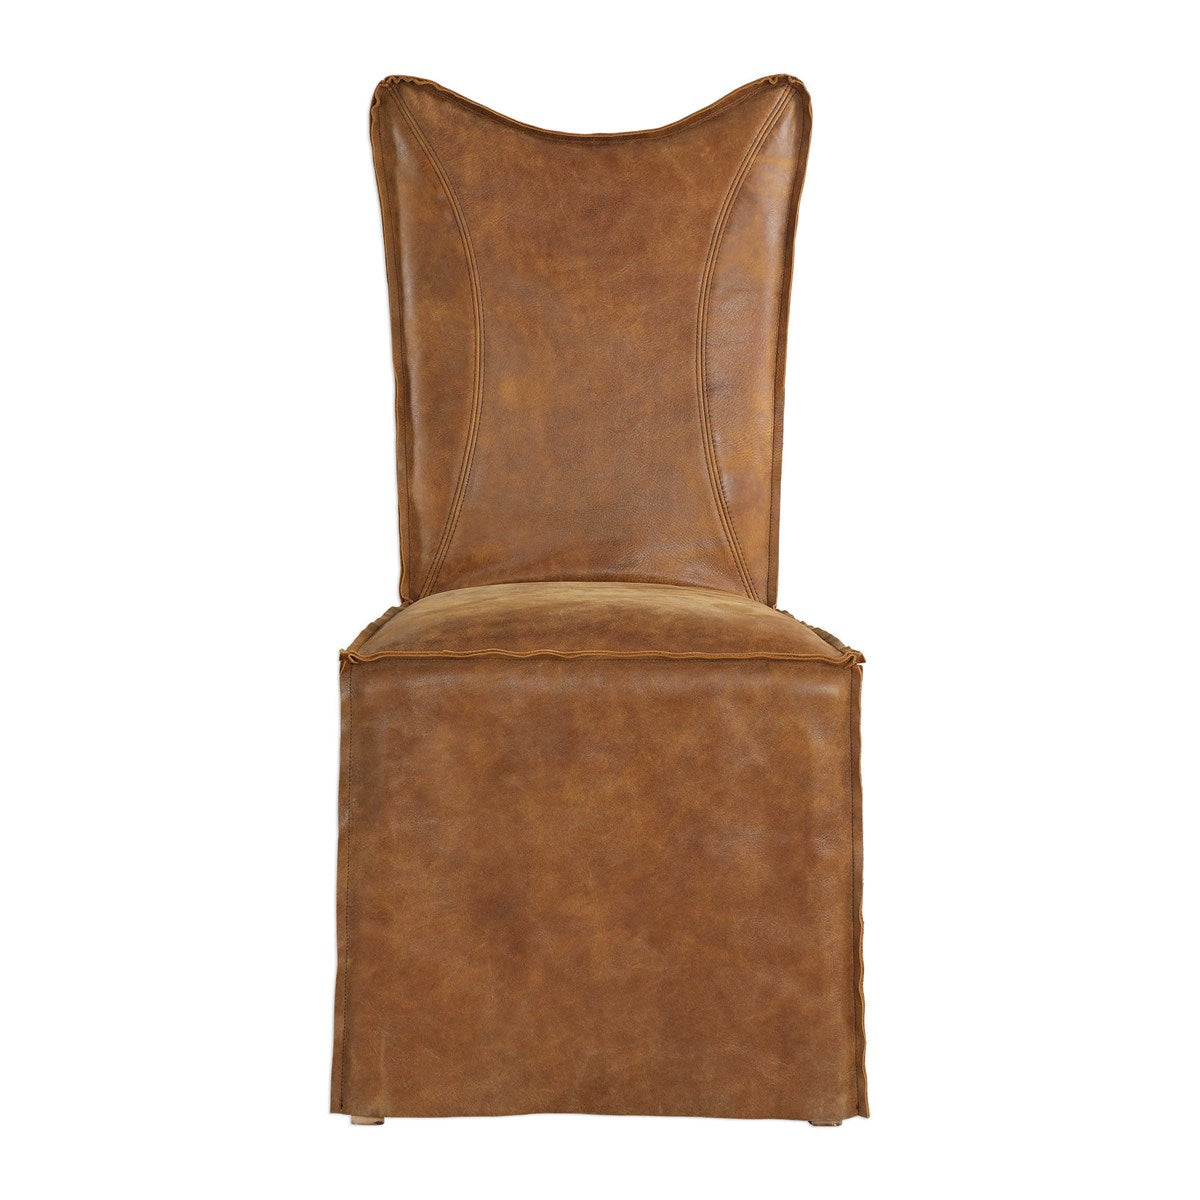 Delroy Armless Chair, Cognac 2 Per Box